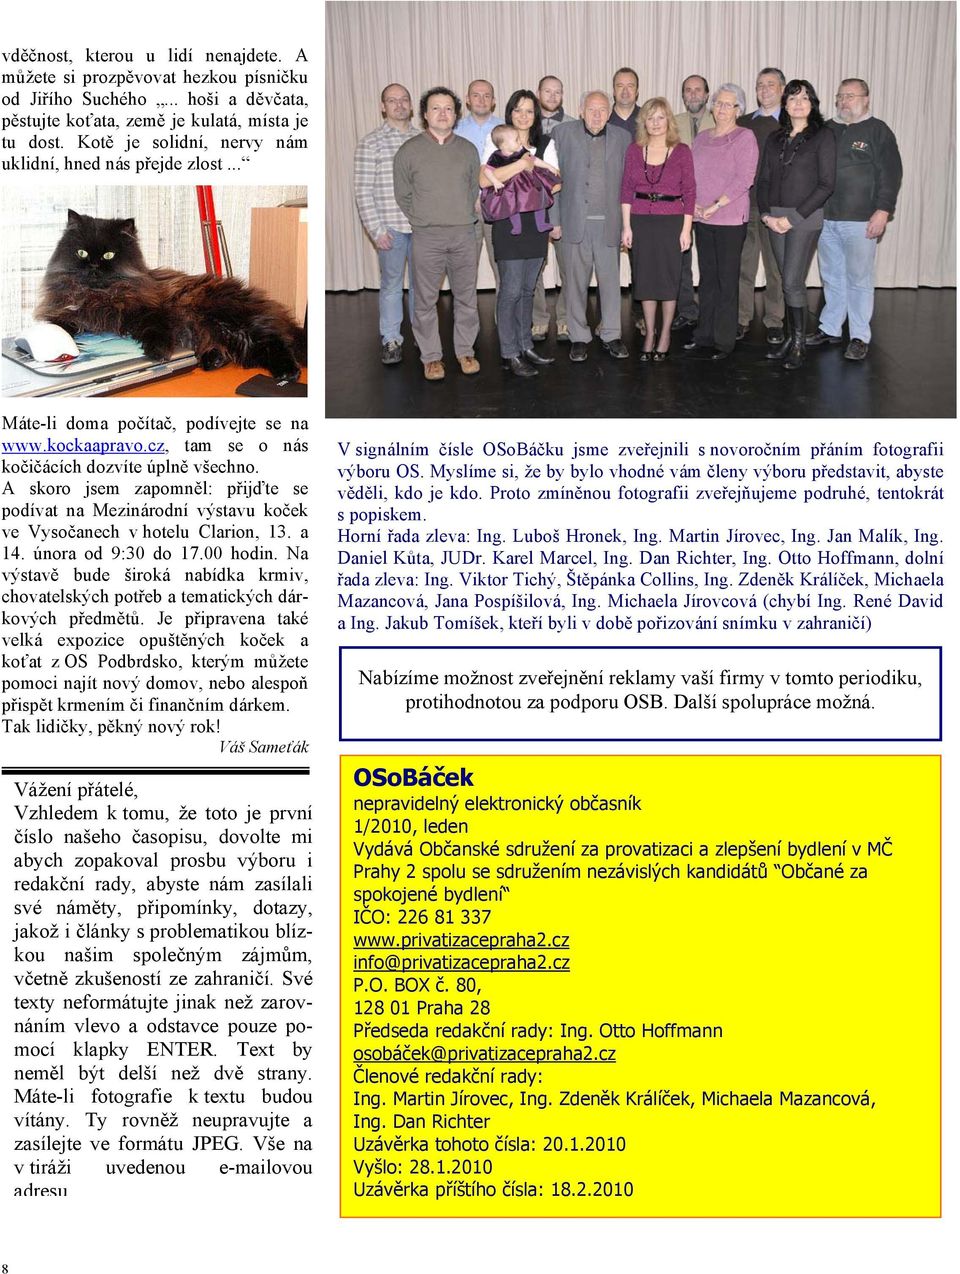 A skoro jsem zapomněl: přijďte se podívat na Mezinárodní výstavu koček ve Vysočanech v hotelu Clarion, 13. a 14. února od 9:30 do 17.00 hodin.